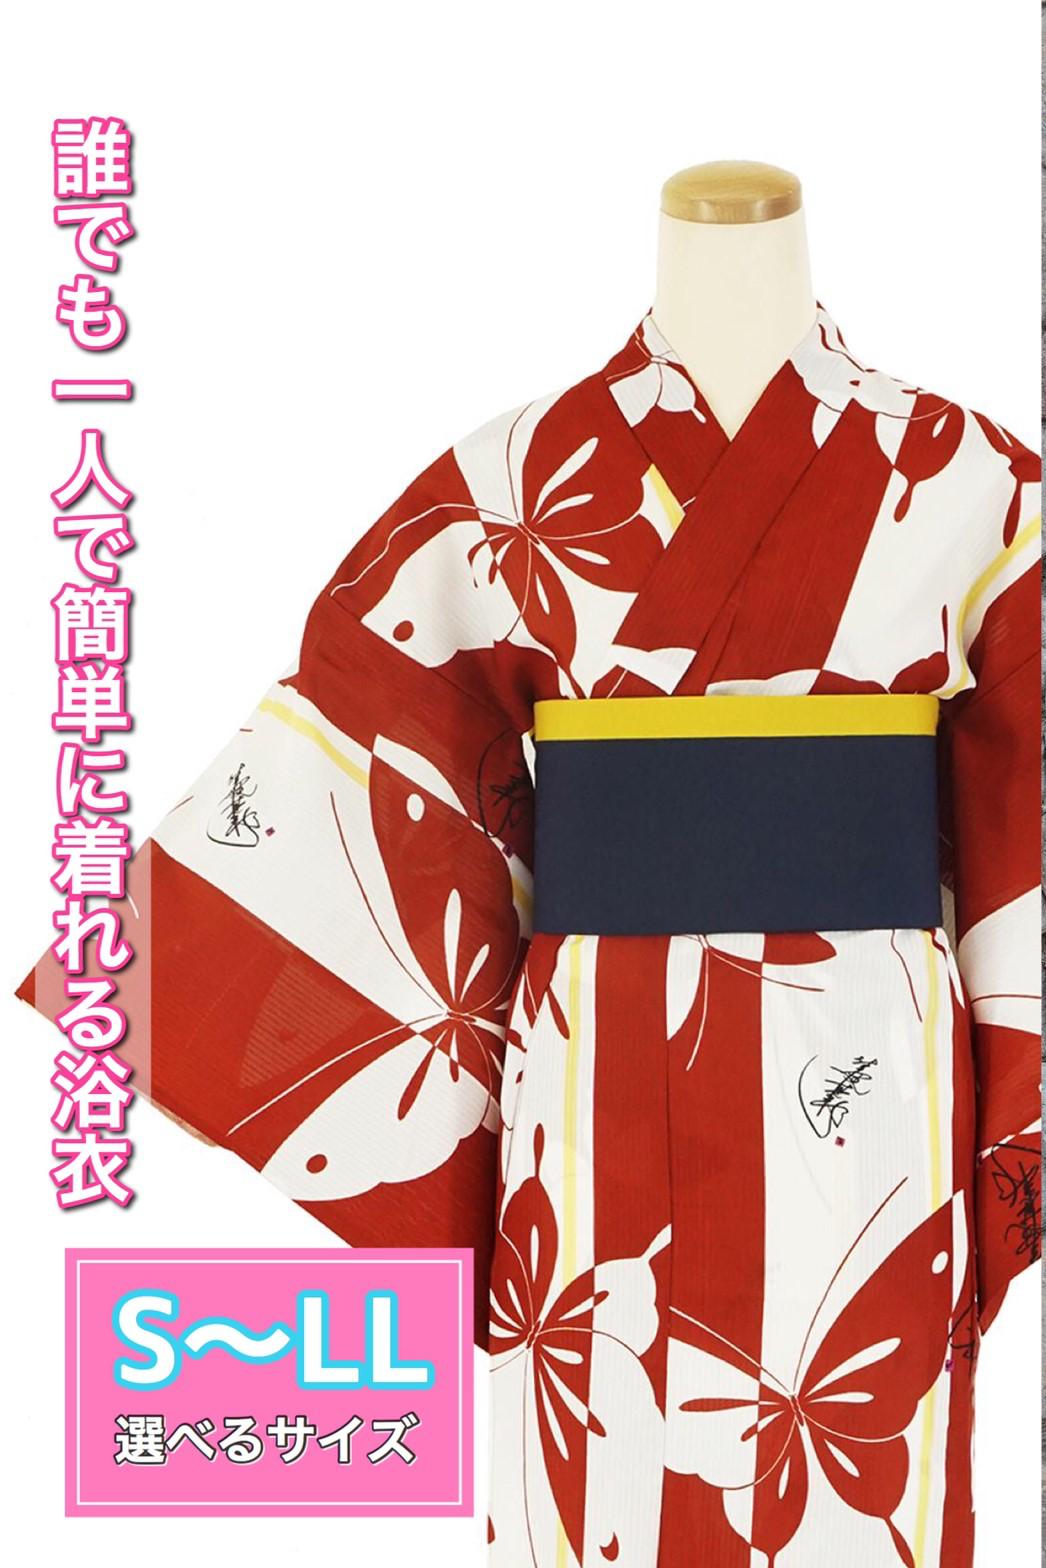 帯が選べる! (衿あり) 浴衣〈いろは蝶/赤〉　※浴衣単品 ¥13,200画像